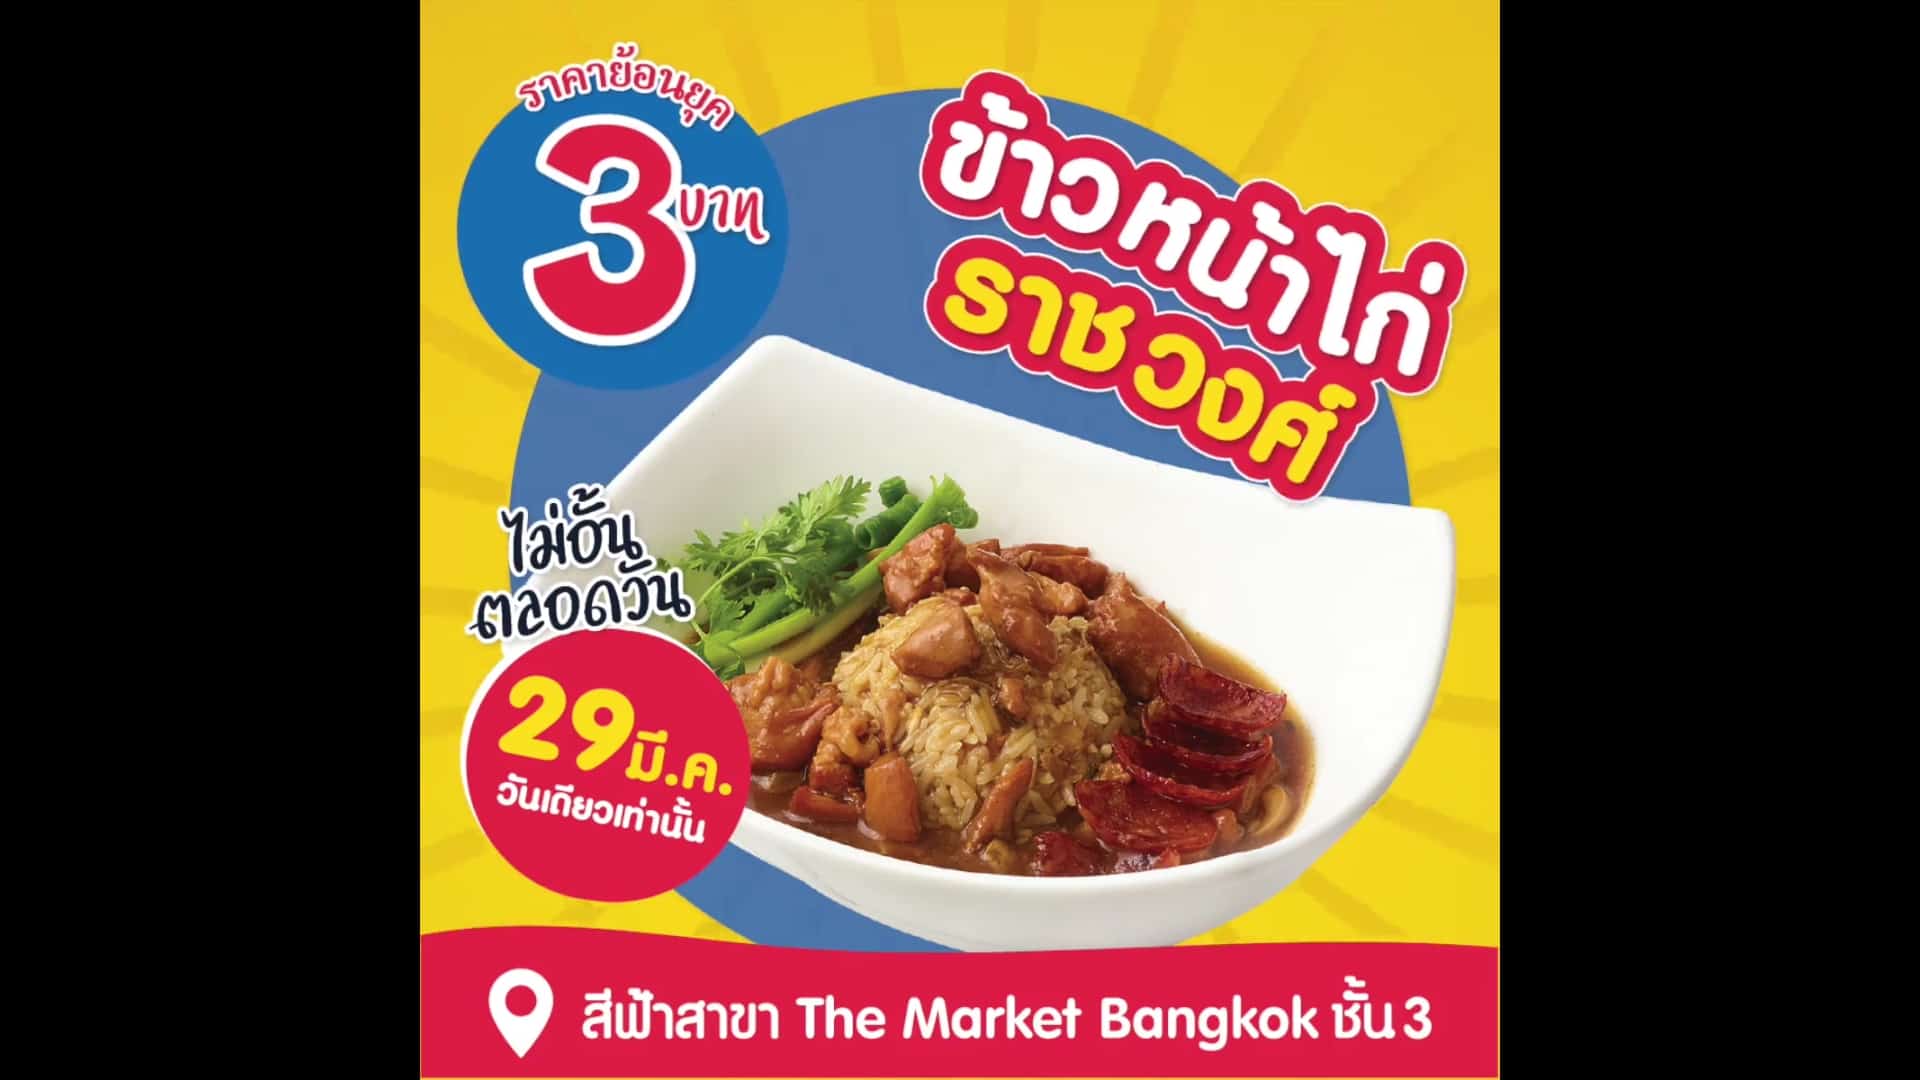 กลับมาอีกครั้ง ตามคำเรียกร้อง!!! ข้าวหน้าไก่ราชวงศ์ ชามละ 3 บาท ที่สีฟ้าสาขา The Market Bangkok 1